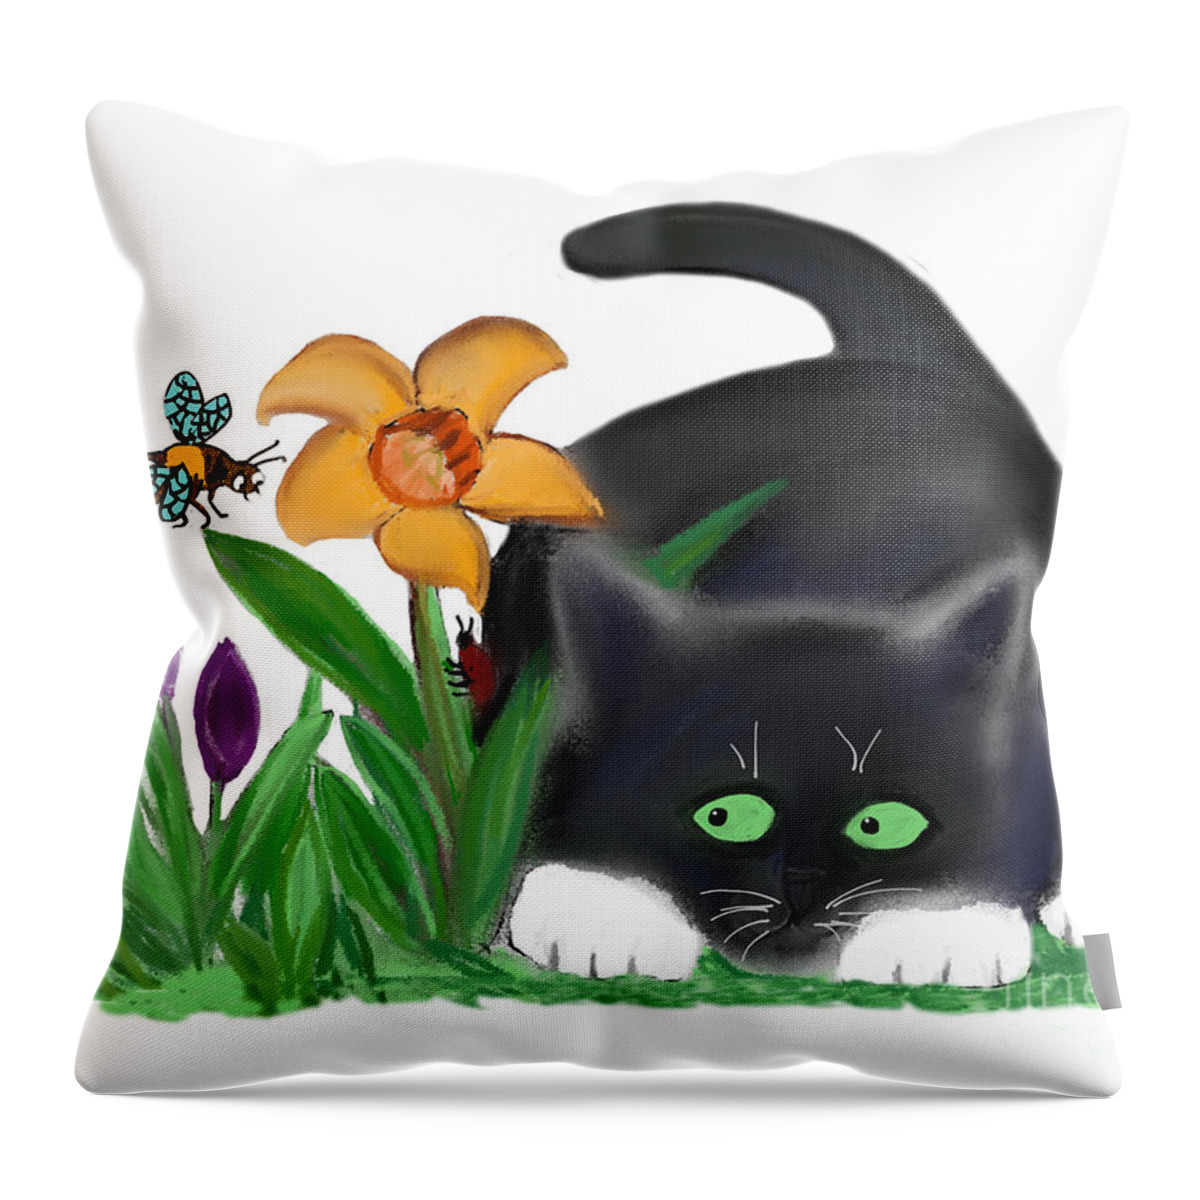 Bee Throw Pillow featuring the digital art Spring Flower Garden Entices a Bee and Kitten by Ellen Miffitt